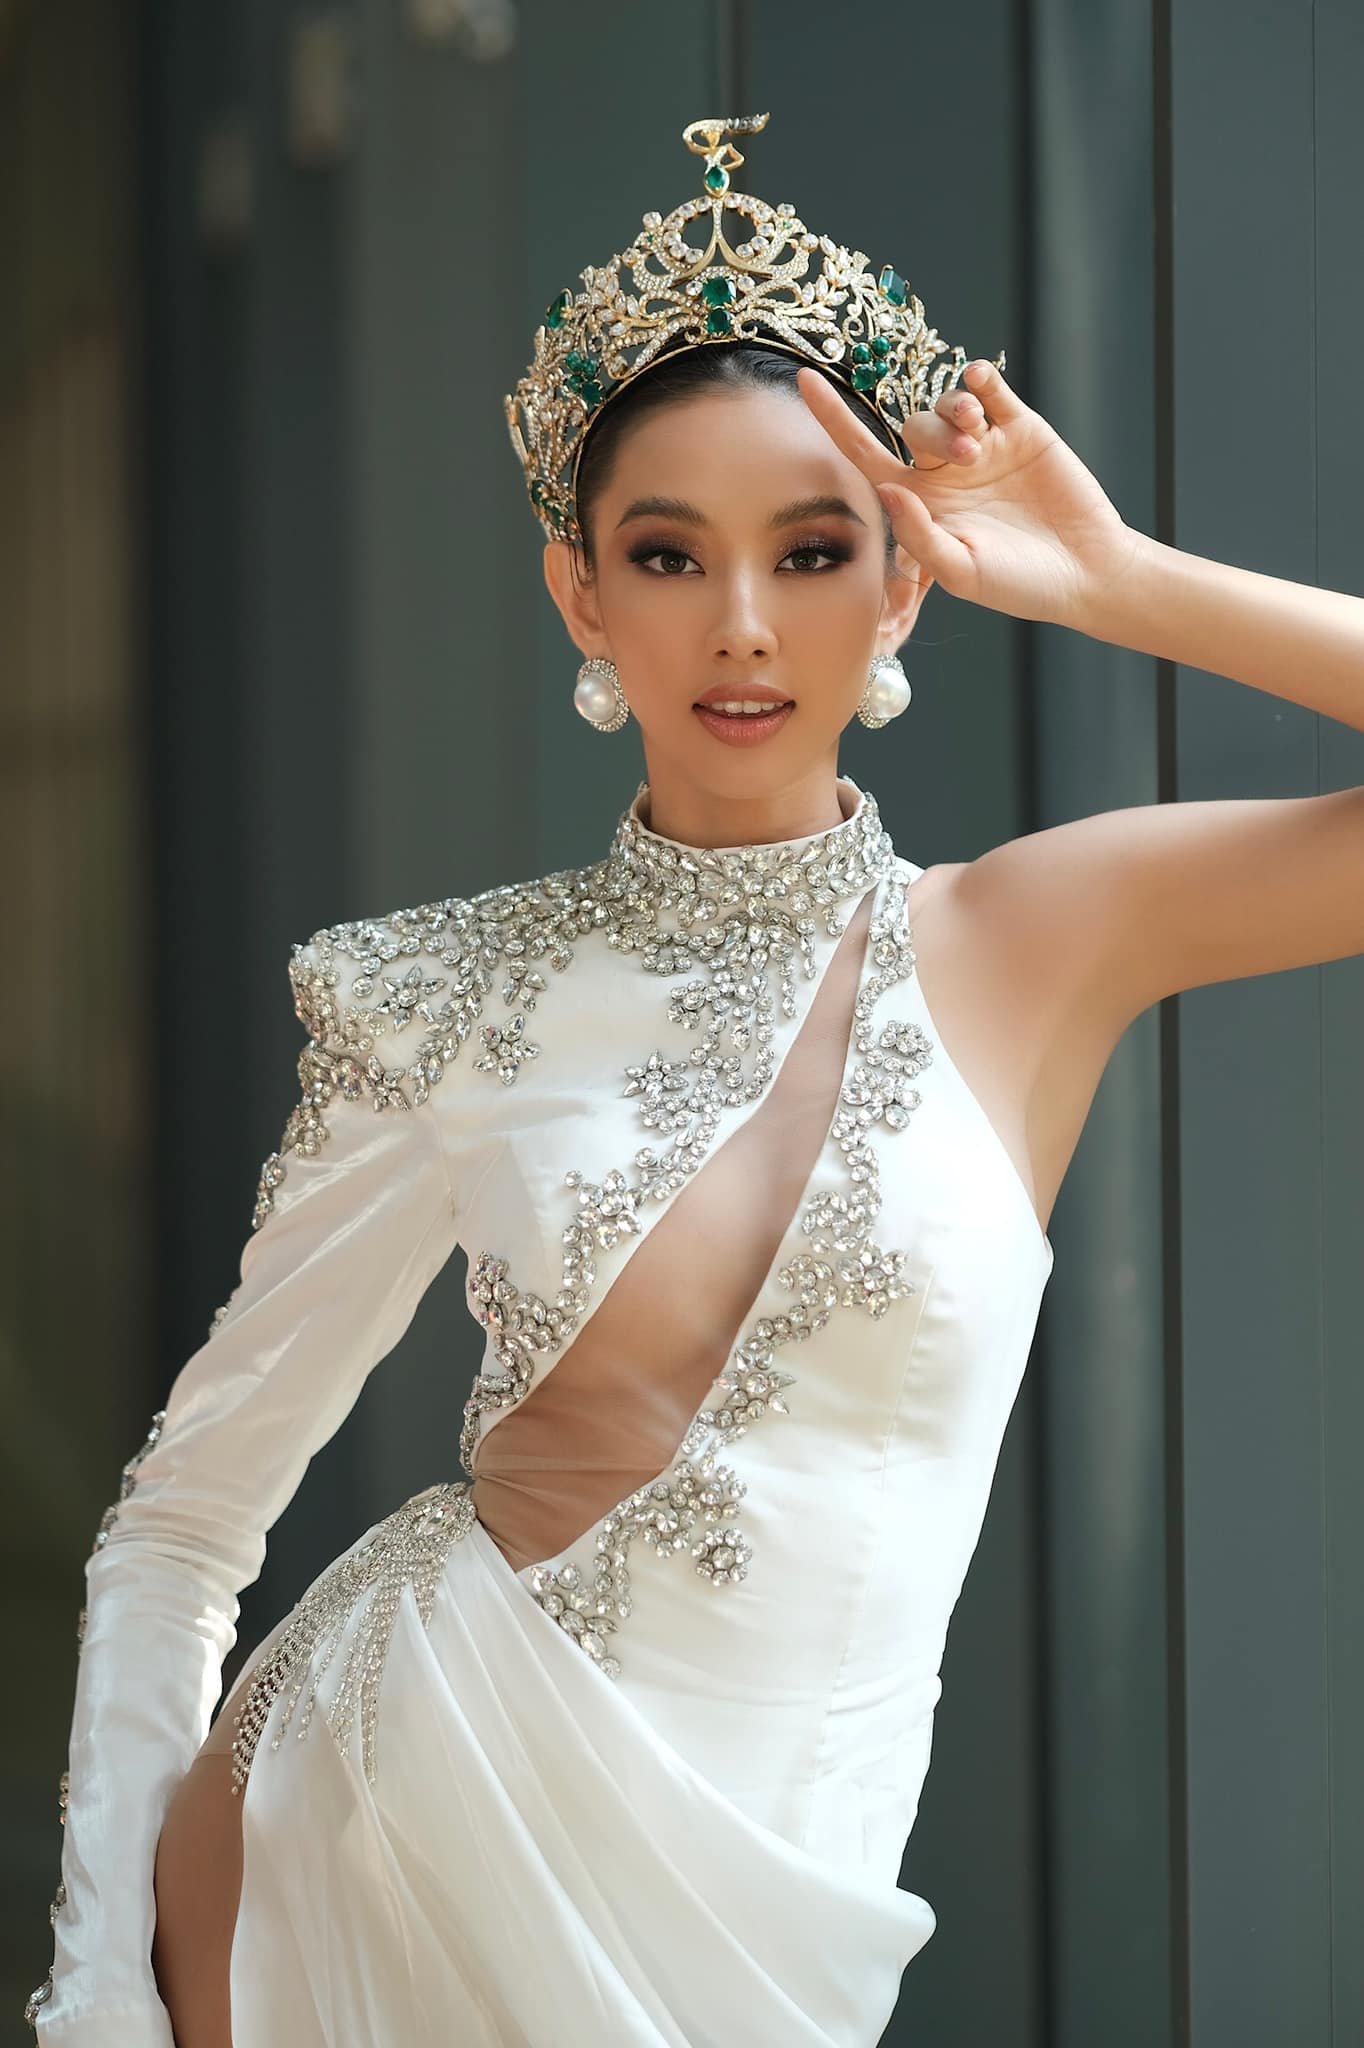 Hoa hậu Hòa bình Quốc tế Nguyễn Thúc Thùy Tiên tiếp tục diện váy cắt xẻ táo bạo trong những ngày hoạt động tại Thái Lan. Nàng hậu được khen ngợi nhờ khả năng tiếng Anh và vẻ ngoài sắc sảo, quyến rũ.